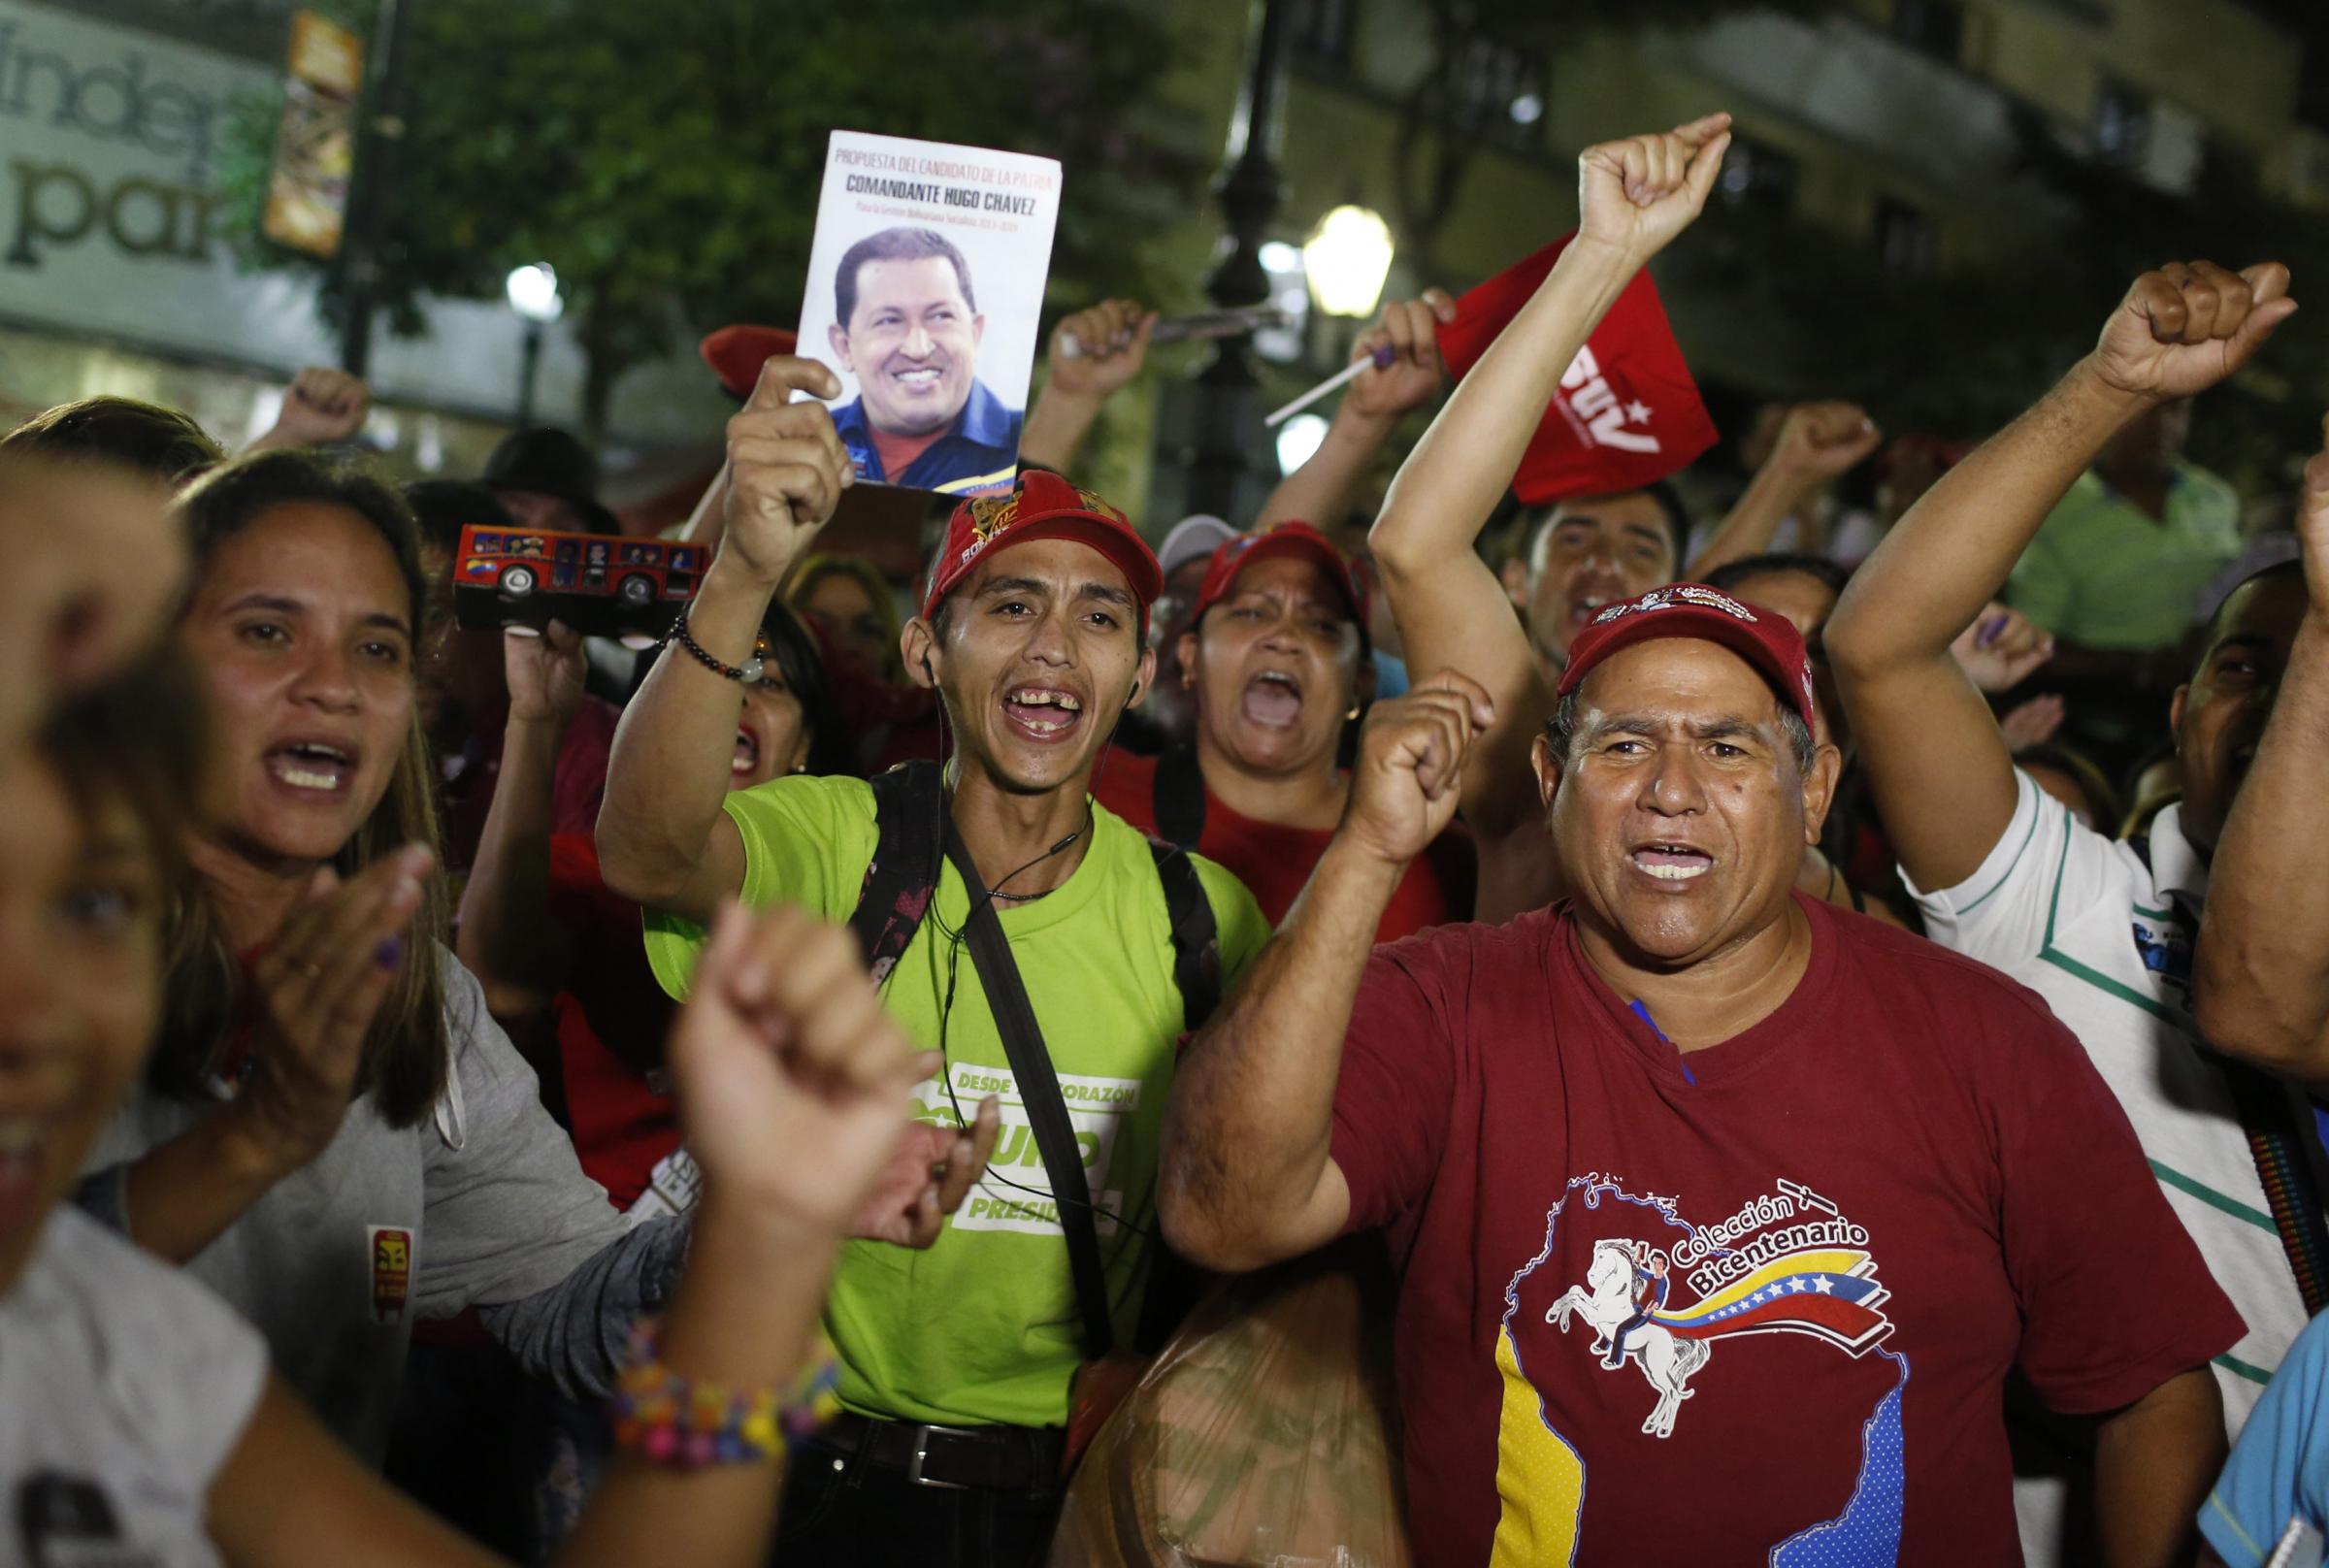 委内瑞拉选后局势动荡7人死亡 马杜罗谴责美国支持暴力抗议